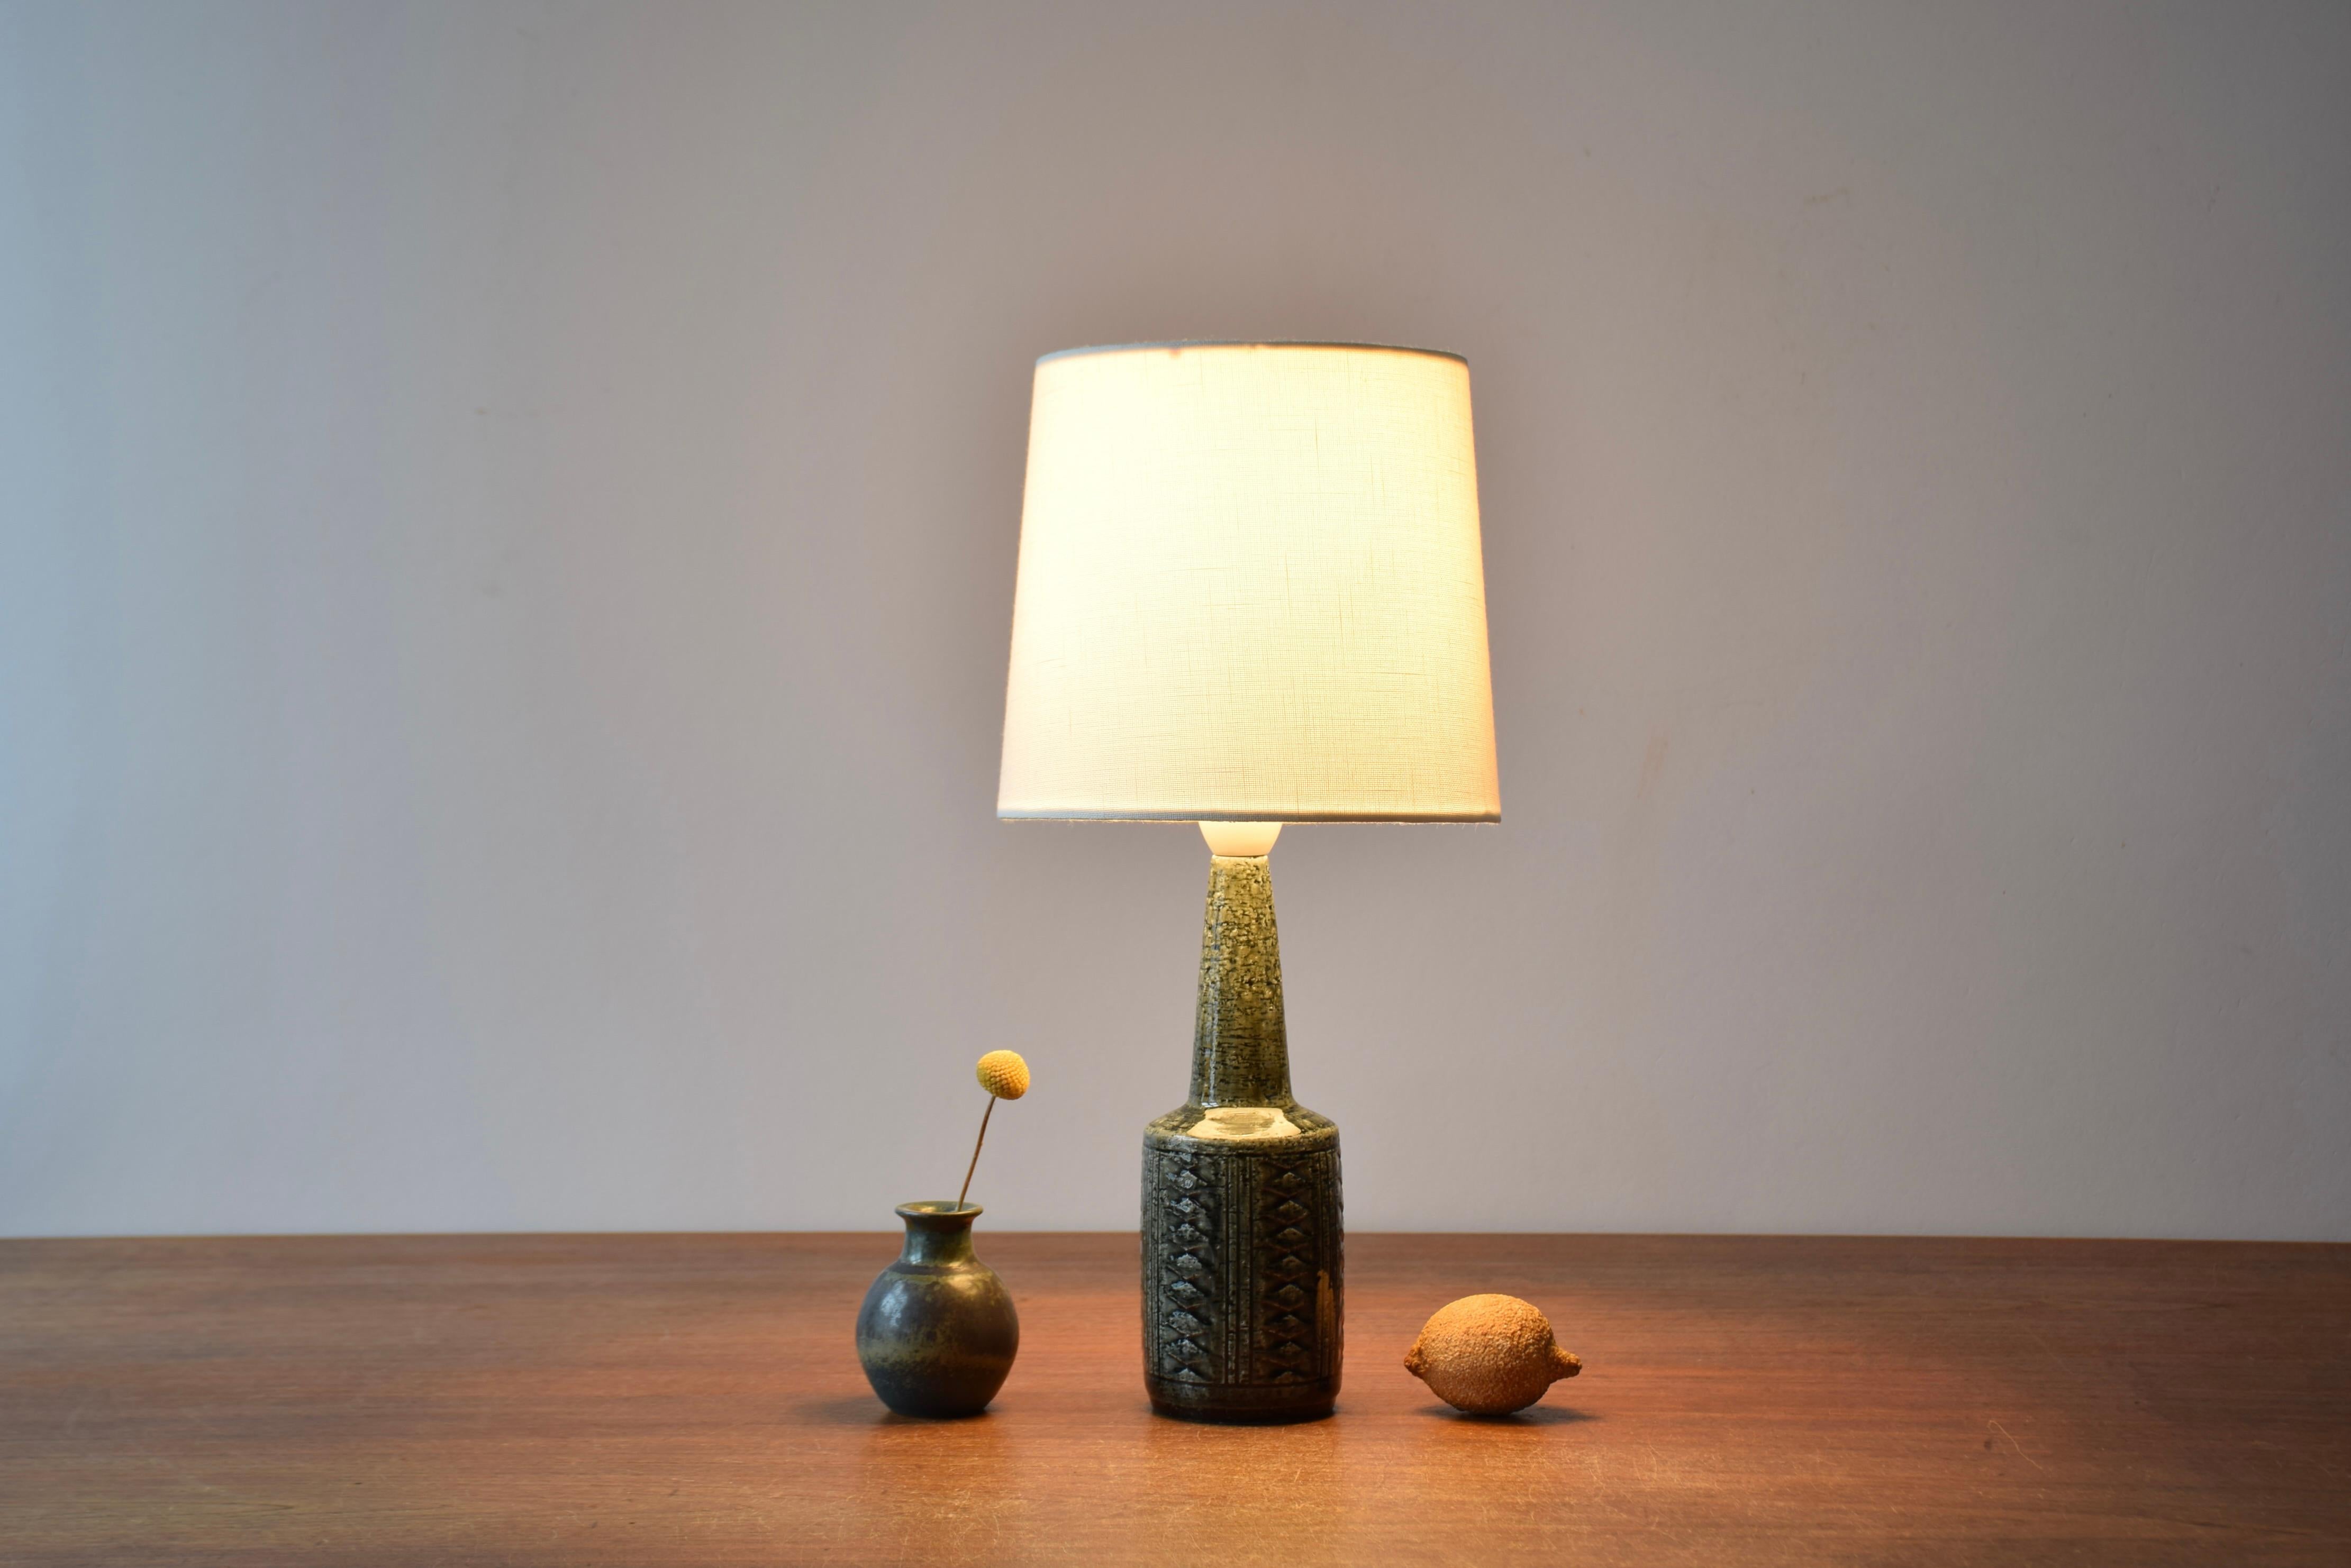 Dänische Midcentury Tischlampe oder Nachttischlampe aus der Keramikwerkstatt Palshus. 

Die Leuchte wurde von Per Linnemann-Schmidt entworfen und etwa in den 1960er Jahren hergestellt.
Sie wird aus Schamotte-Ton hergestellt, der eine raue und